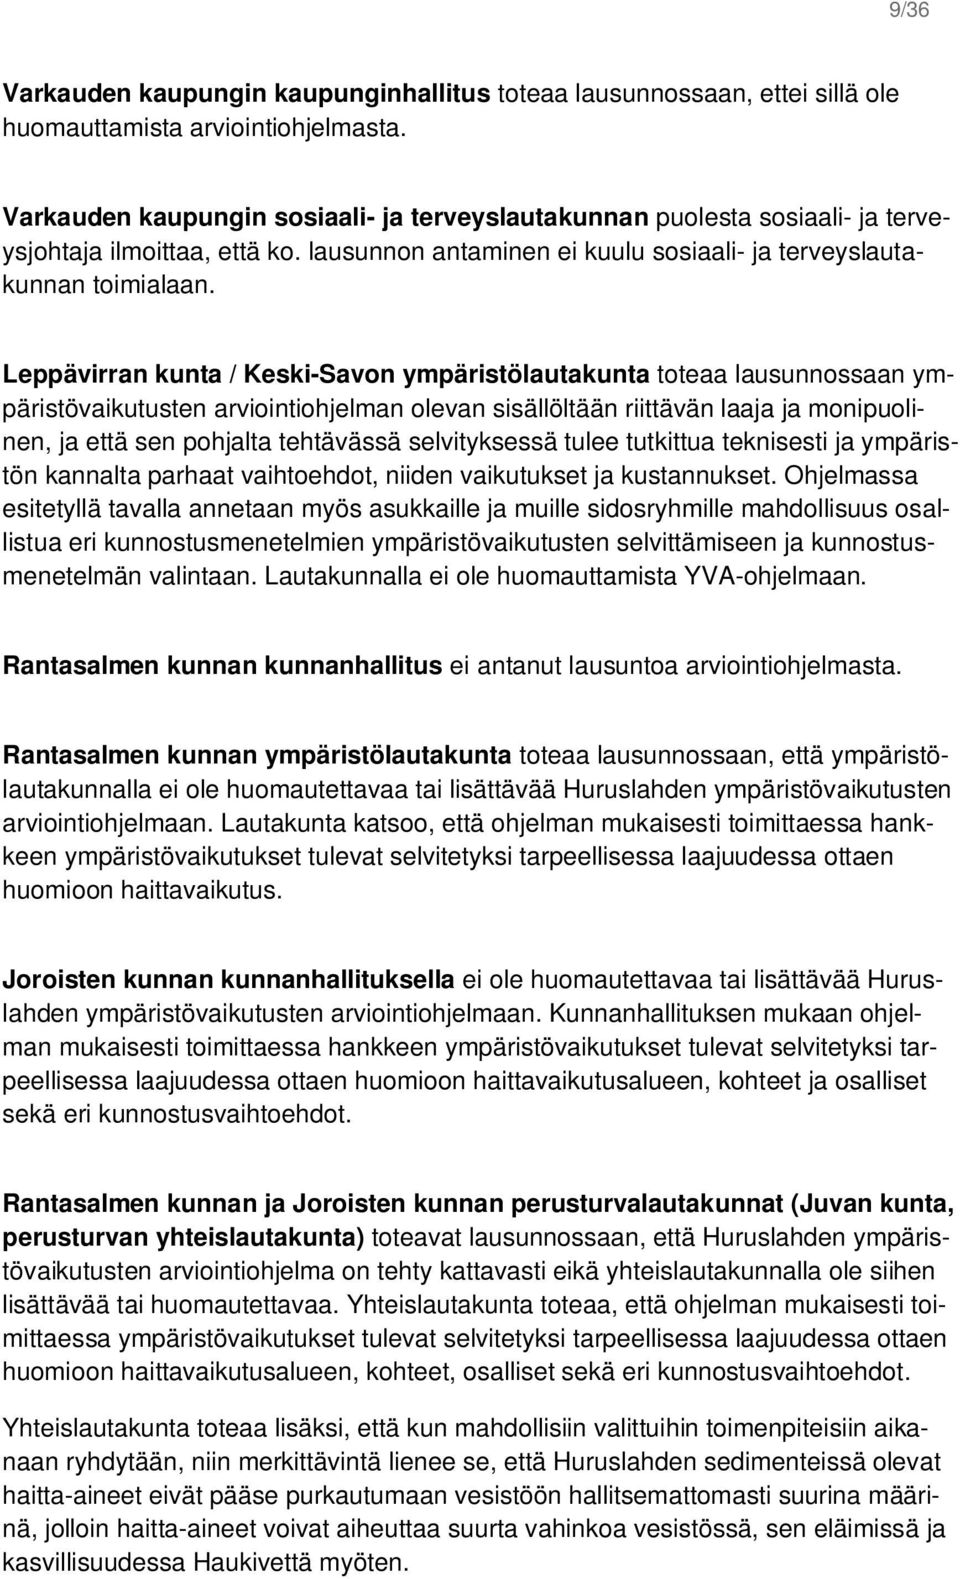 Leppävirran kunta / Keski-Savon ympäristölautakunta toteaa lausunnossaan ympäristövaikutusten arviointiohjelman olevan sisällöltään riittävän laaja ja monipuolinen, ja että sen pohjalta tehtävässä